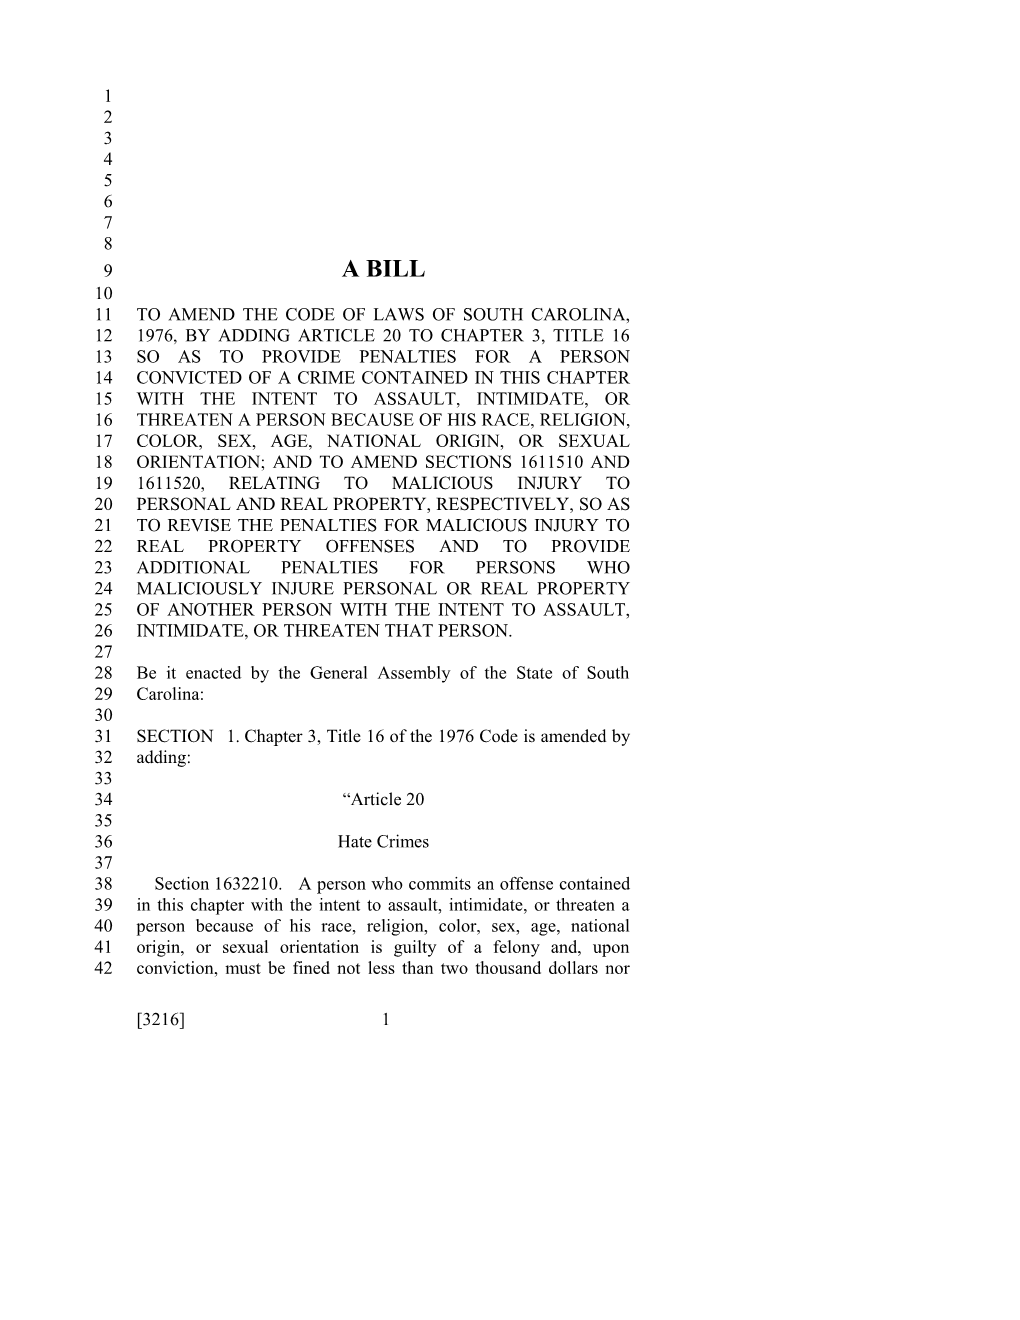 2017-2018 Bill 3216 Text of Previous Version (Dec. 15, 2016) - South Carolina Legislature Online